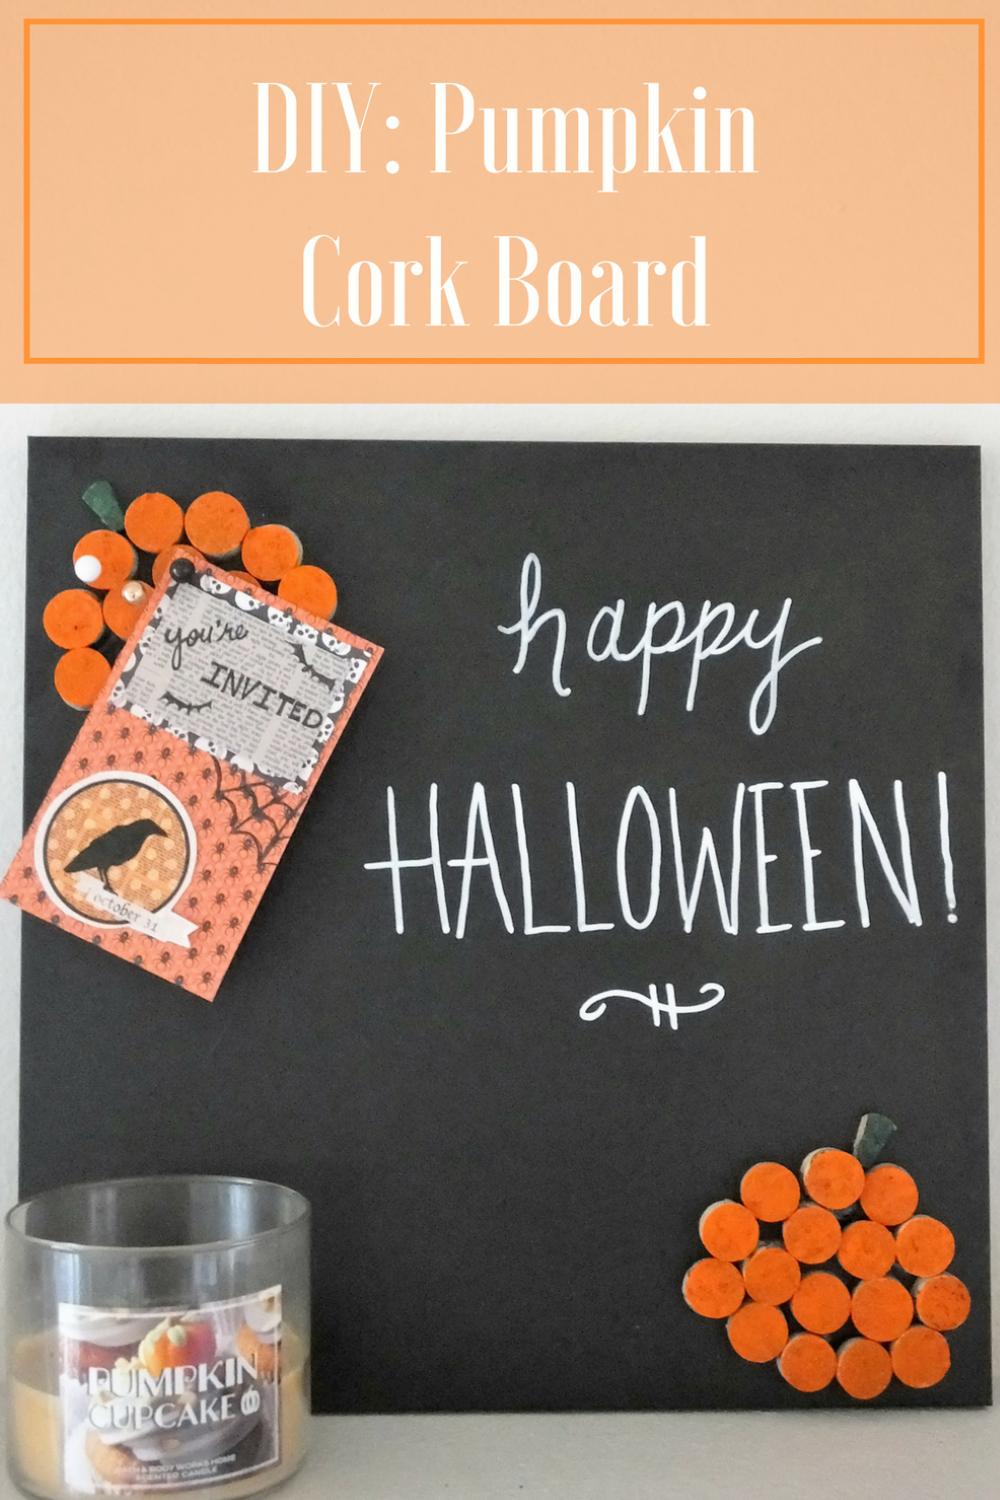 DIY: Pumpkin Cork Board